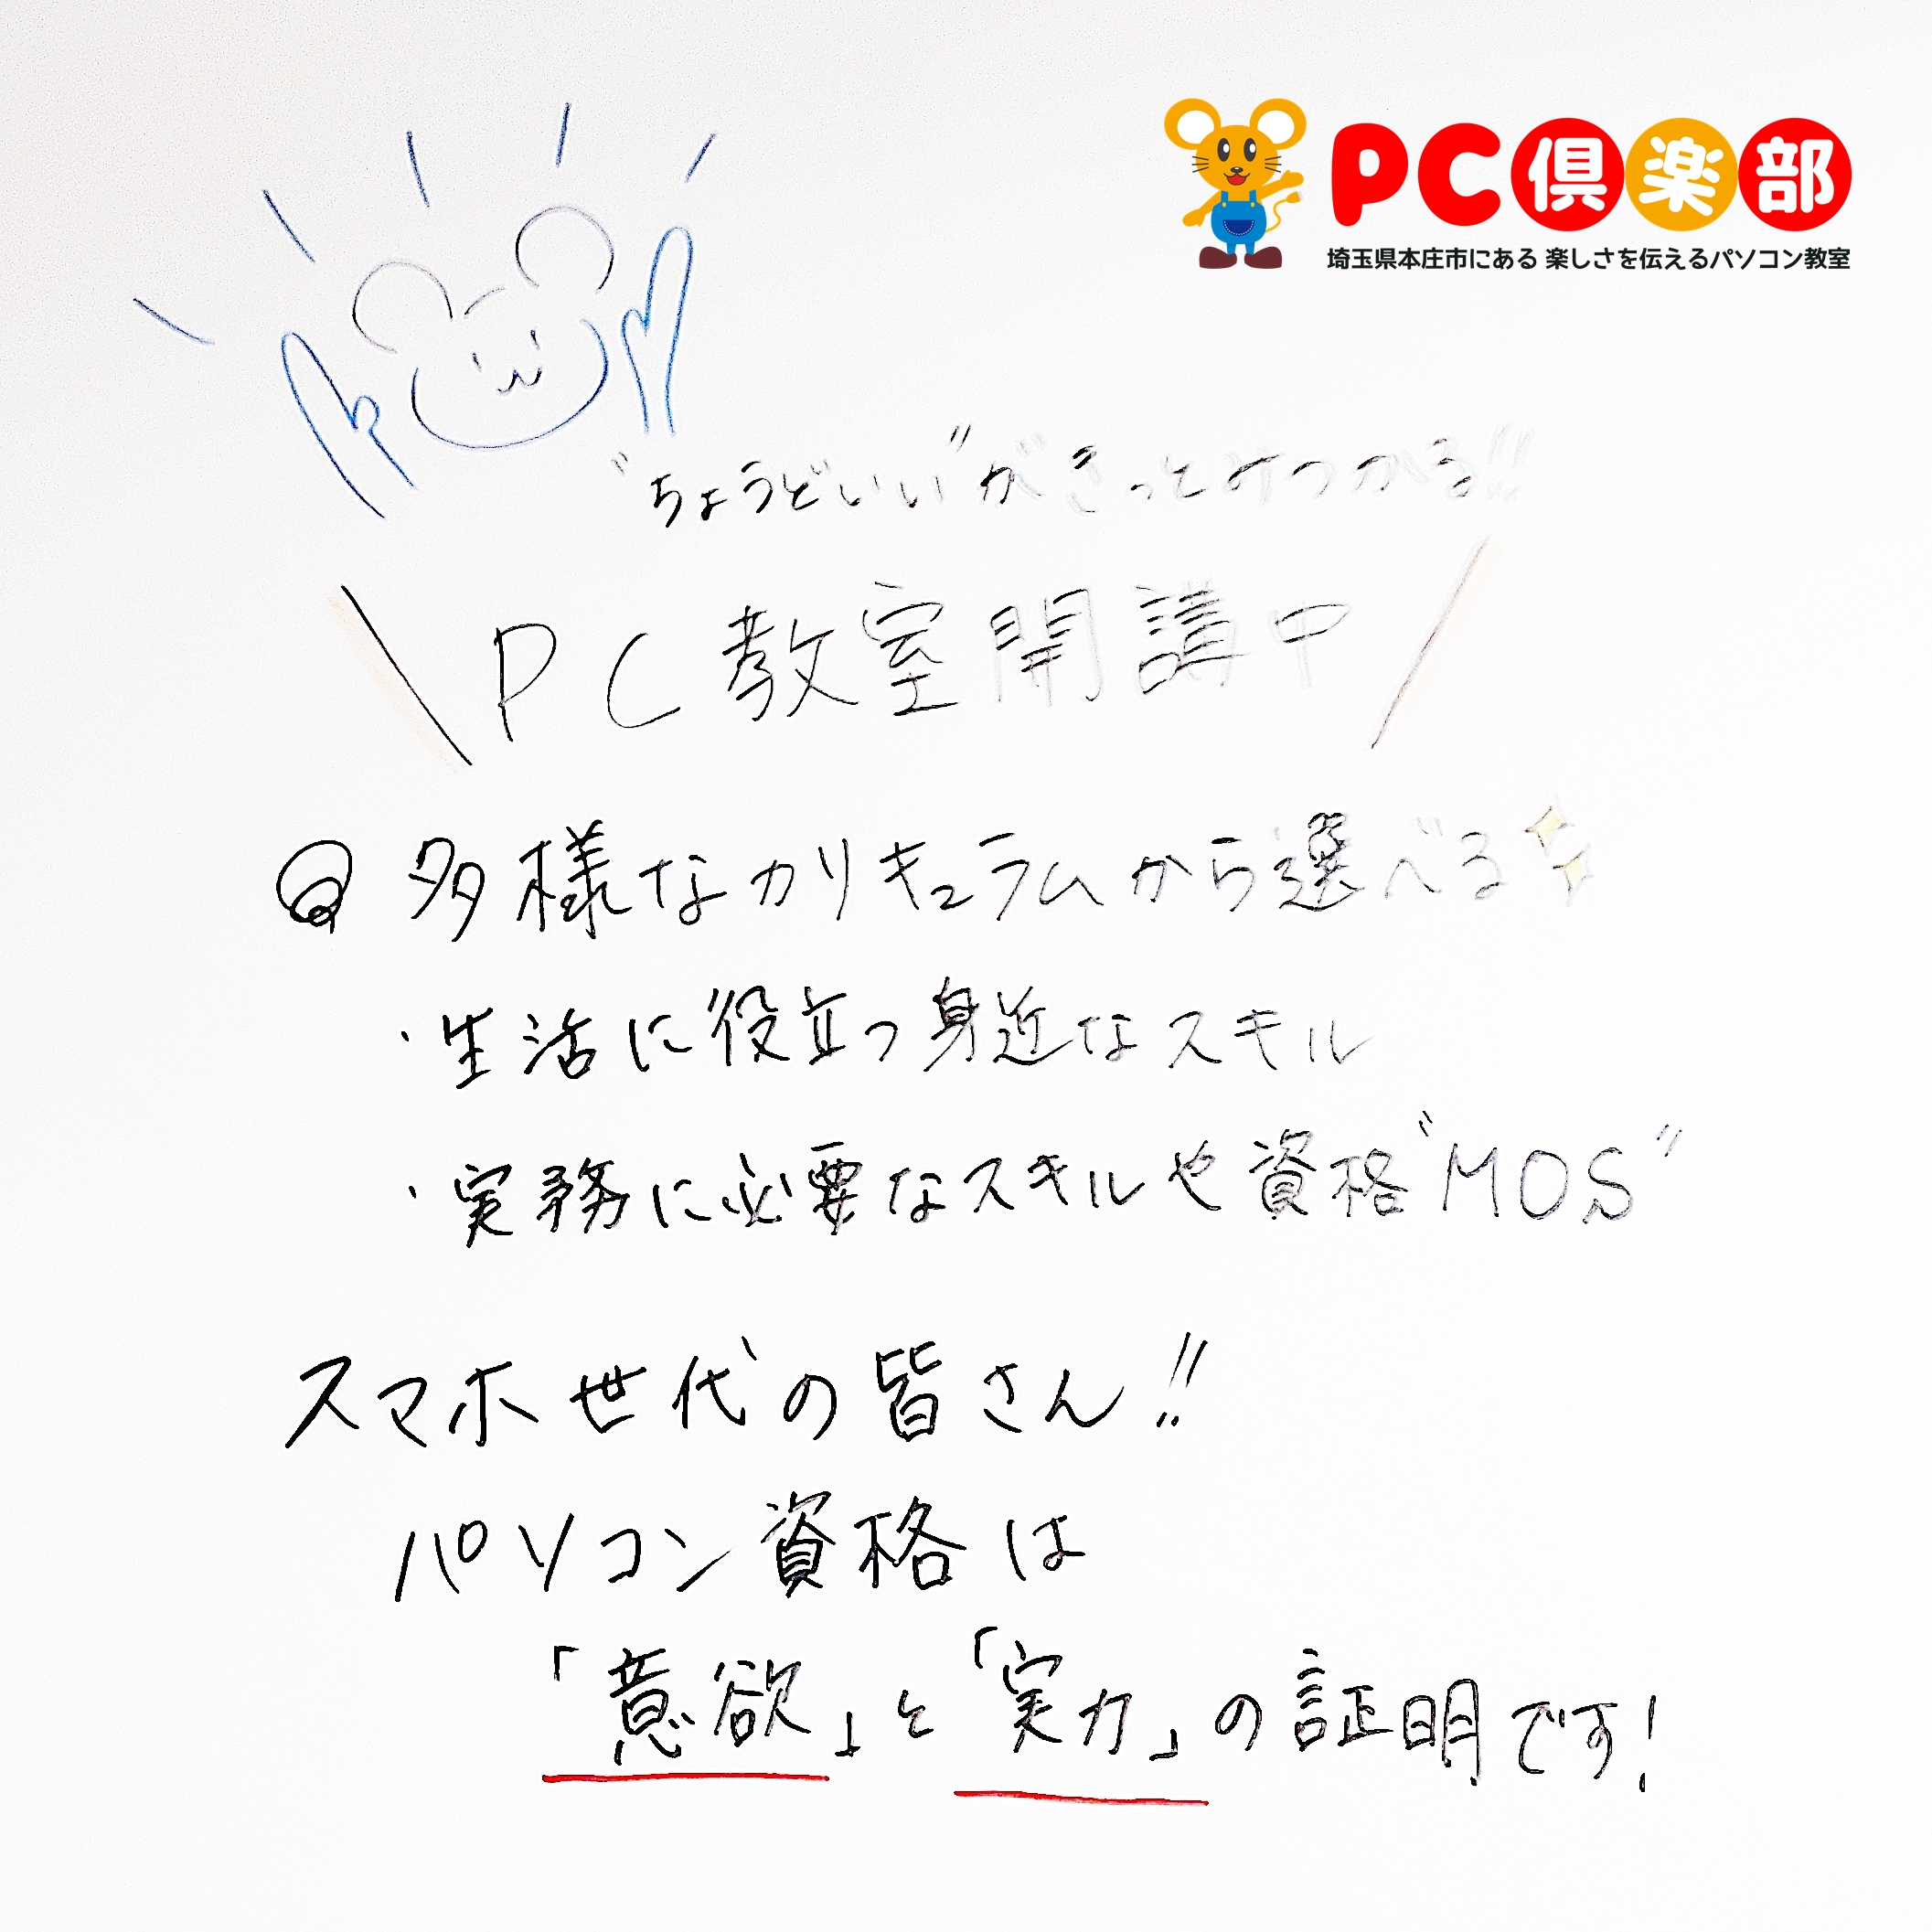 PC倶楽部手書き文字 (2)